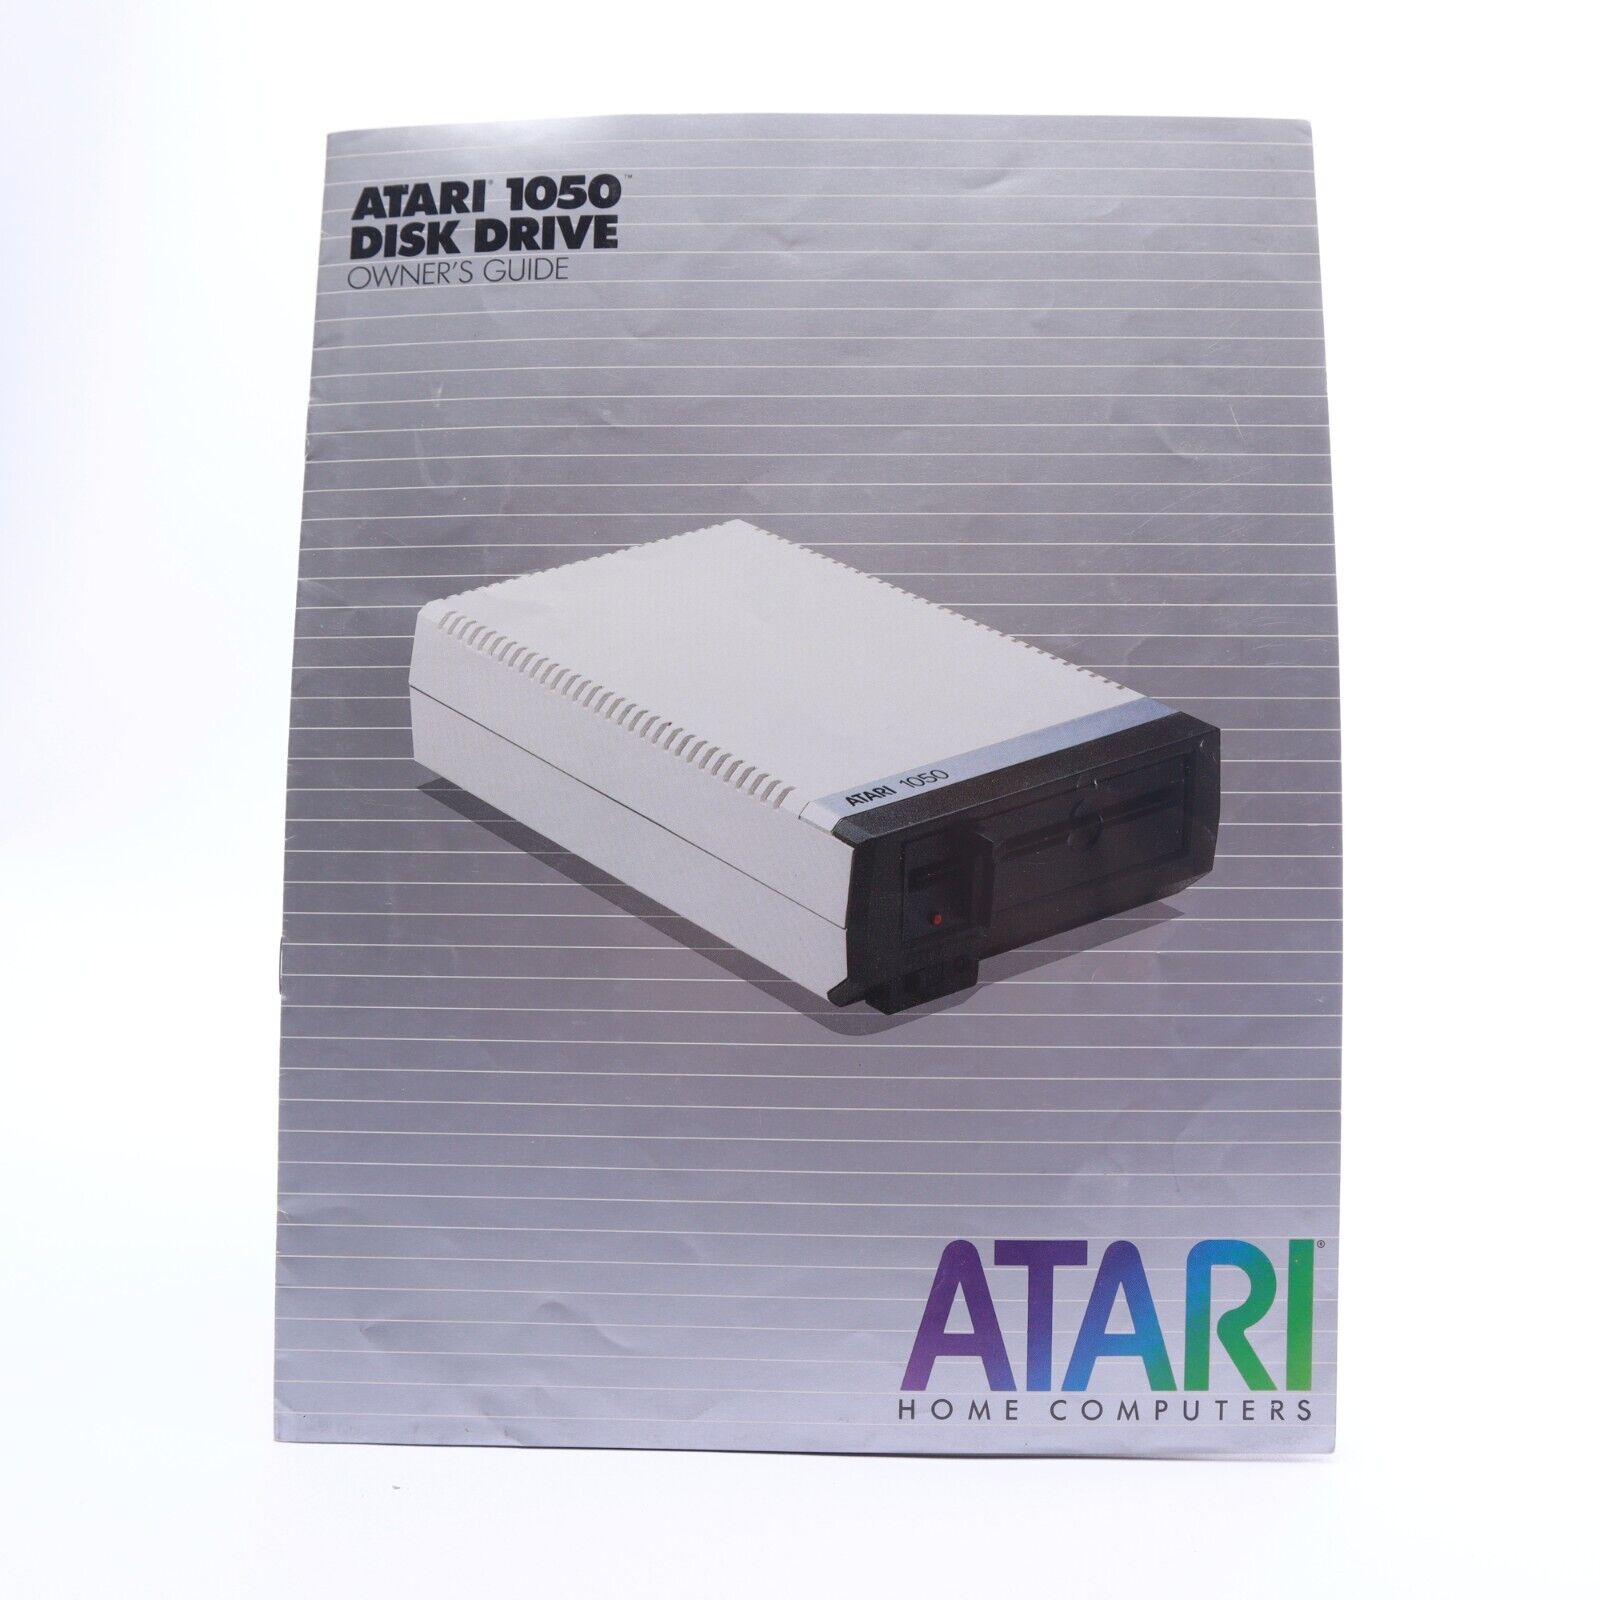 Original Atari 1050 Disk Drive Owners Manual